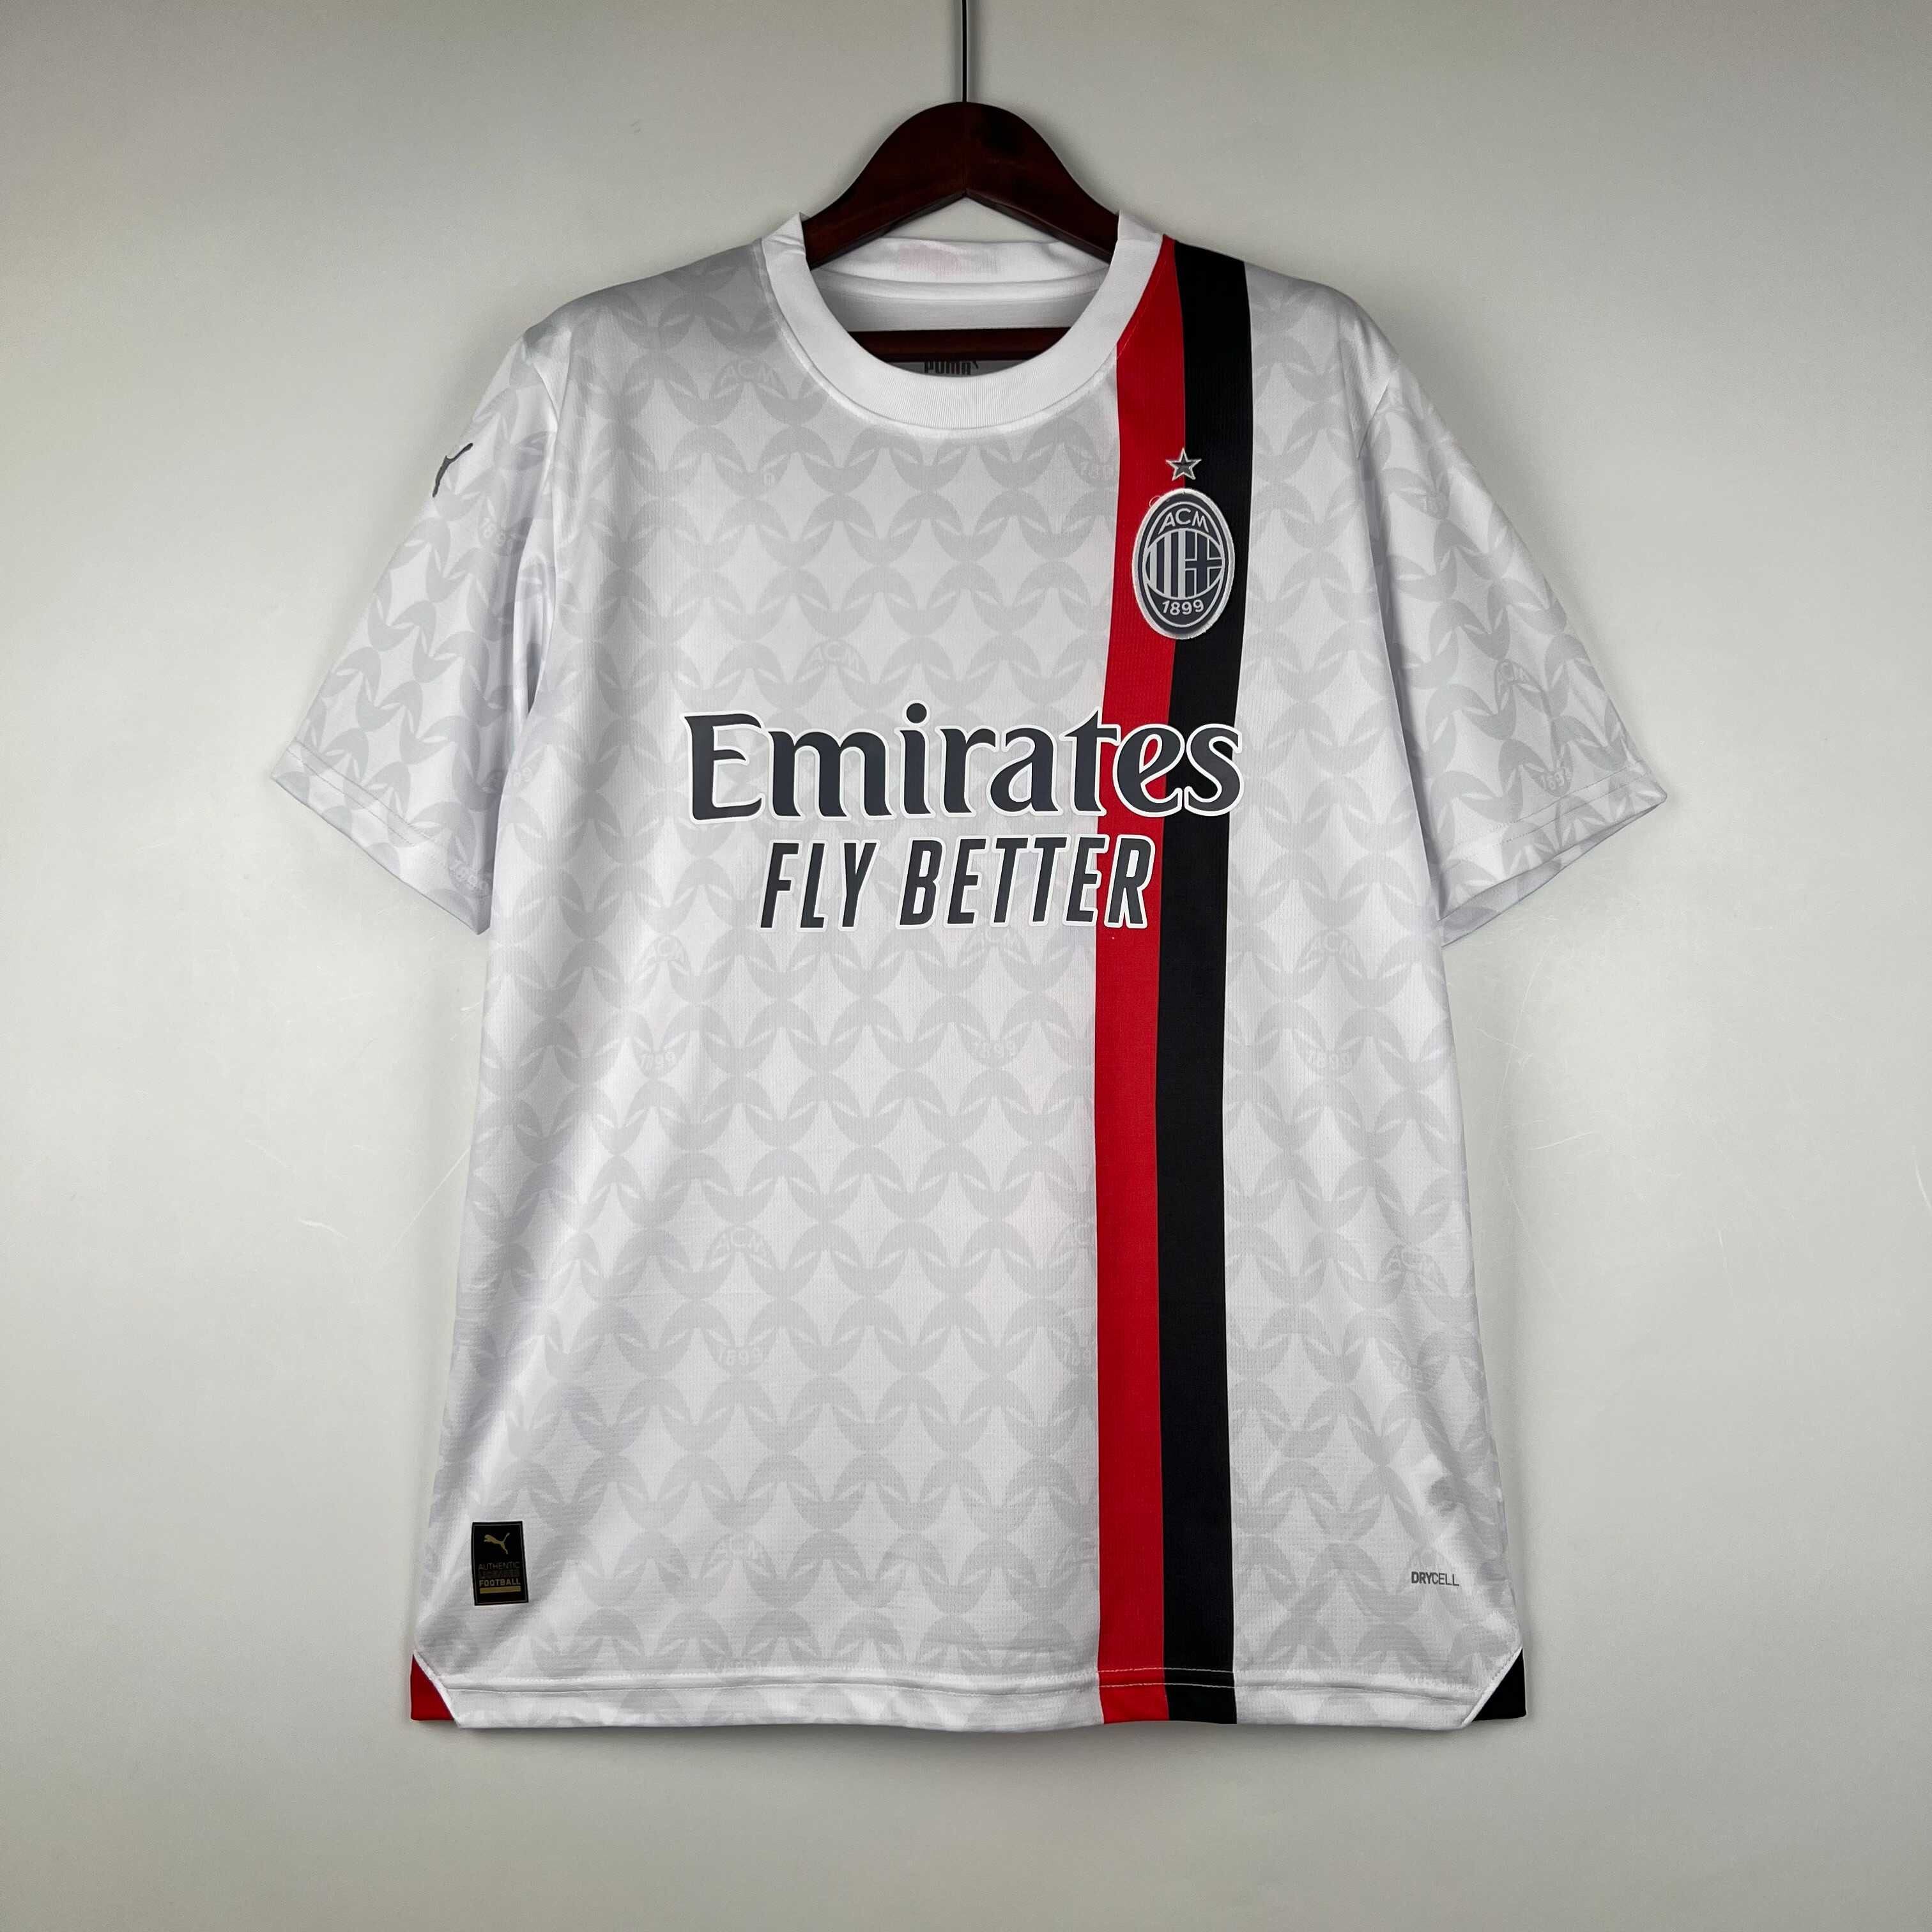 AC Milan consulta torcedores na criação de camisa dos 125 anos